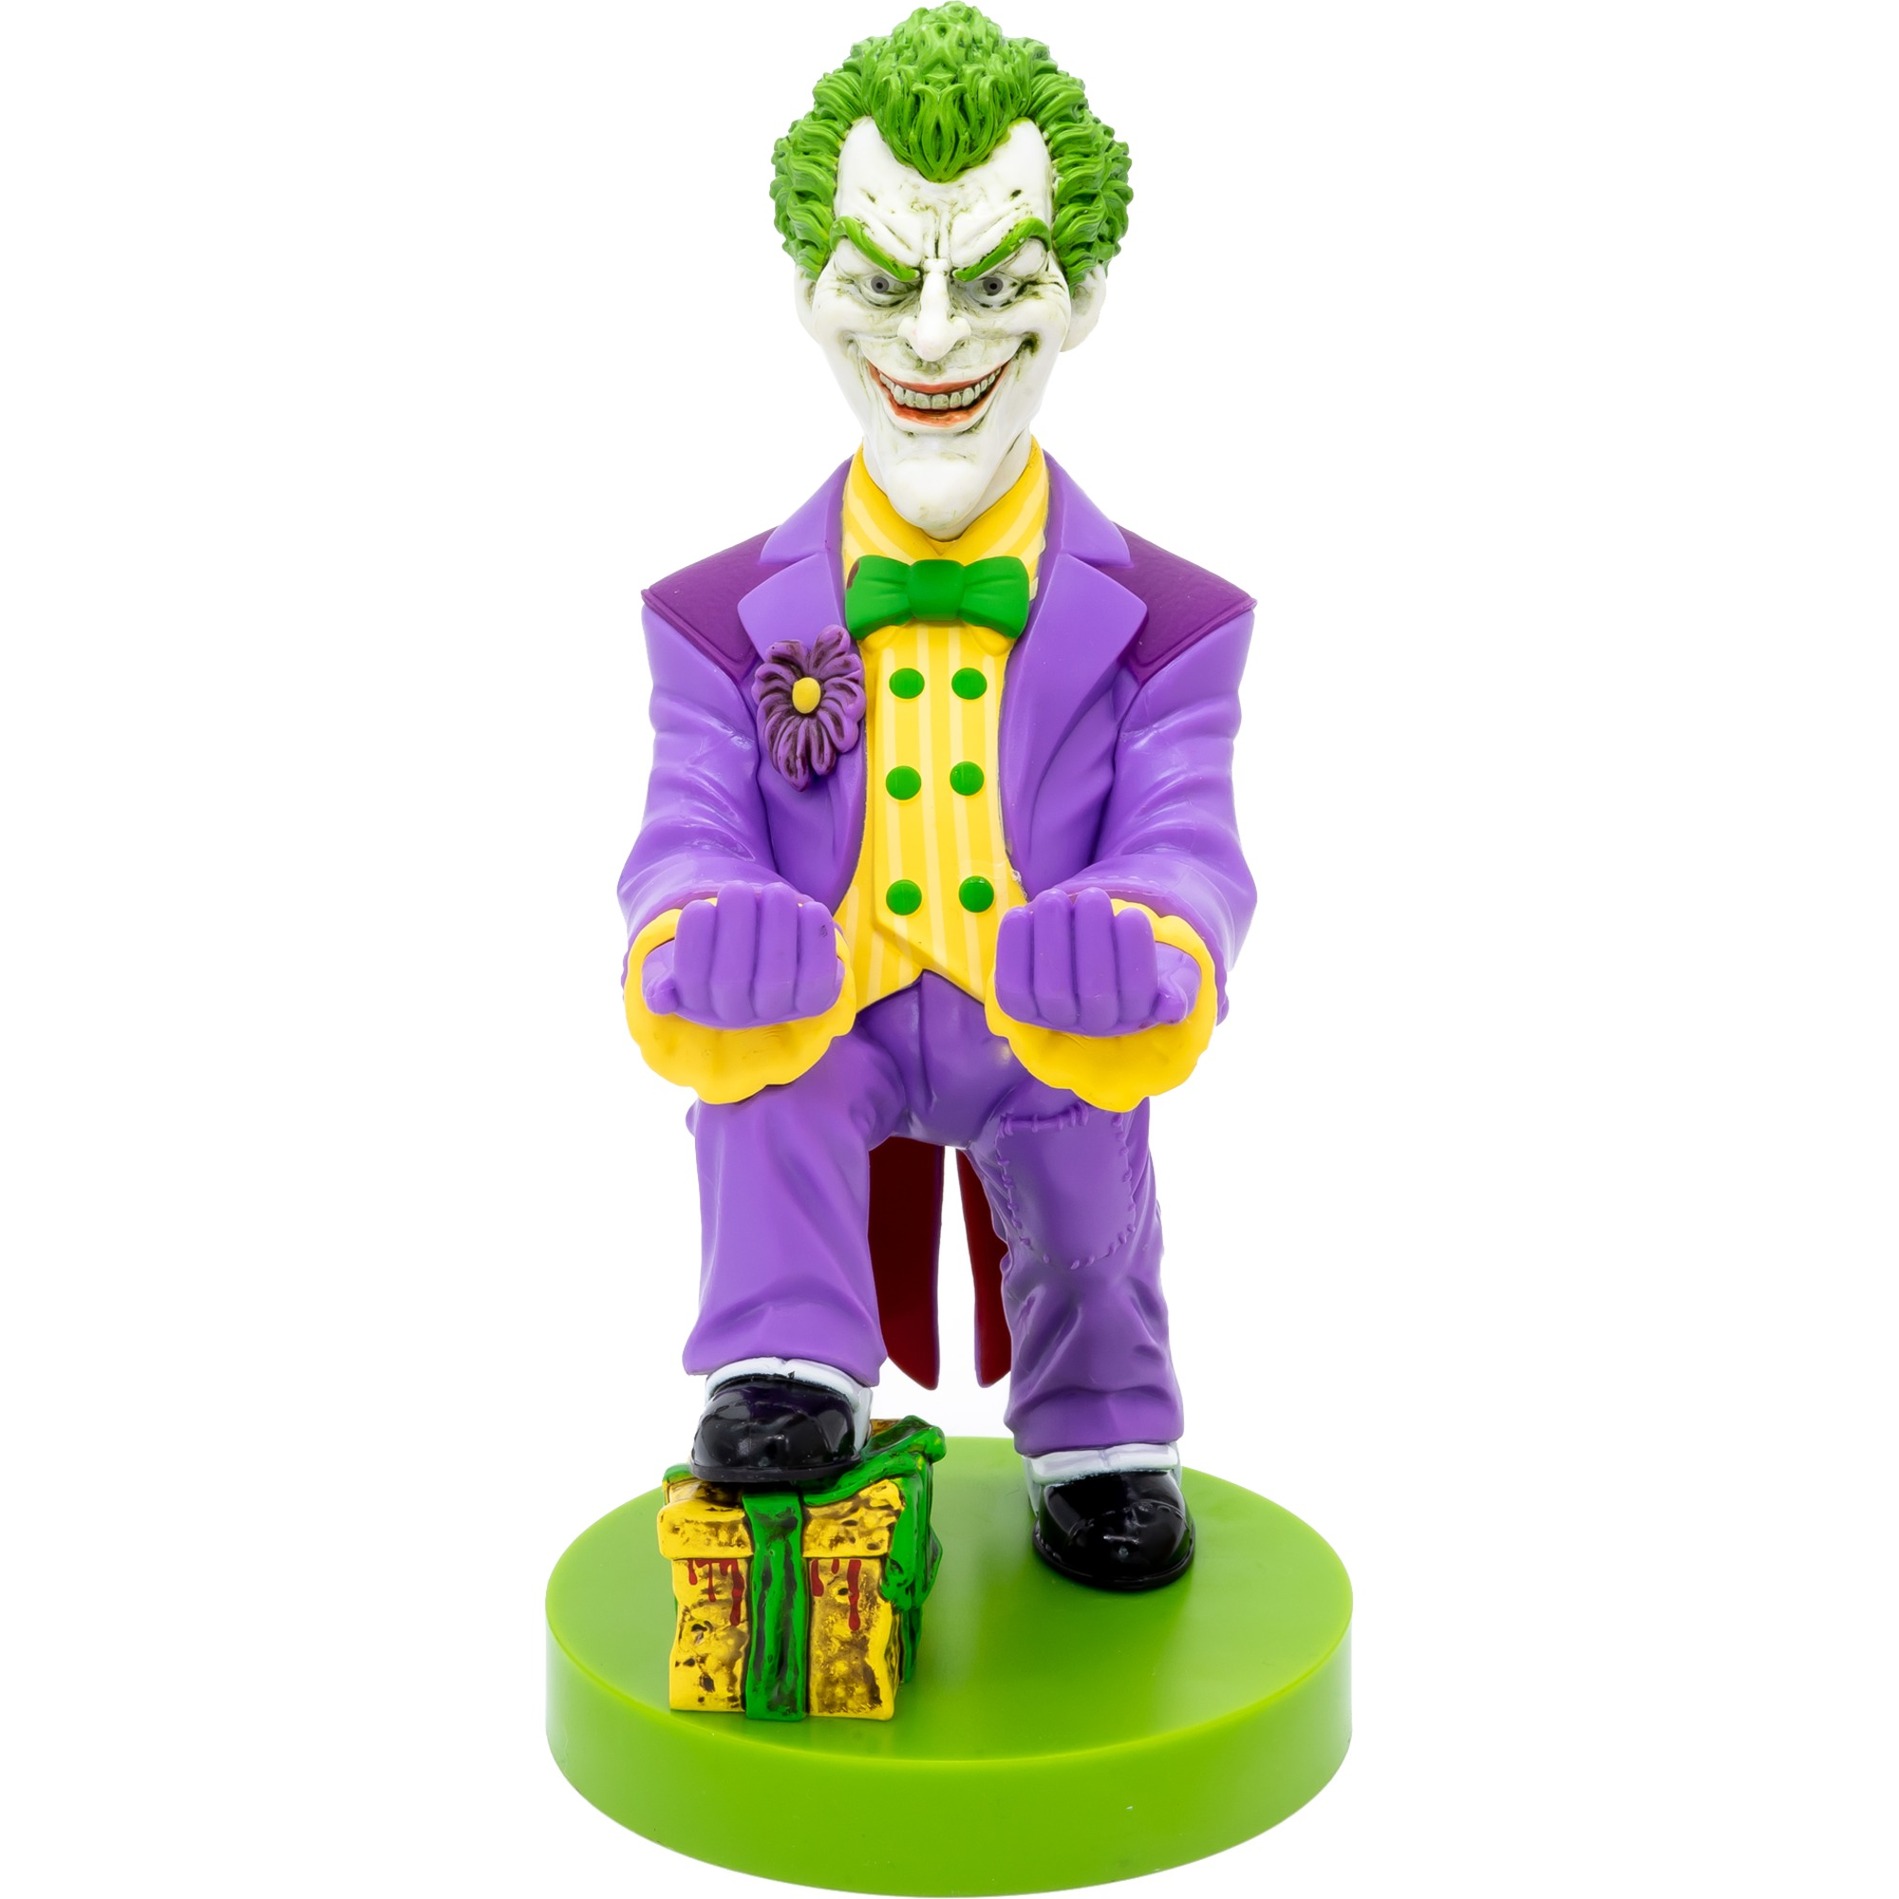 Image of Alternate - Joker, Halterung online einkaufen bei Alternate